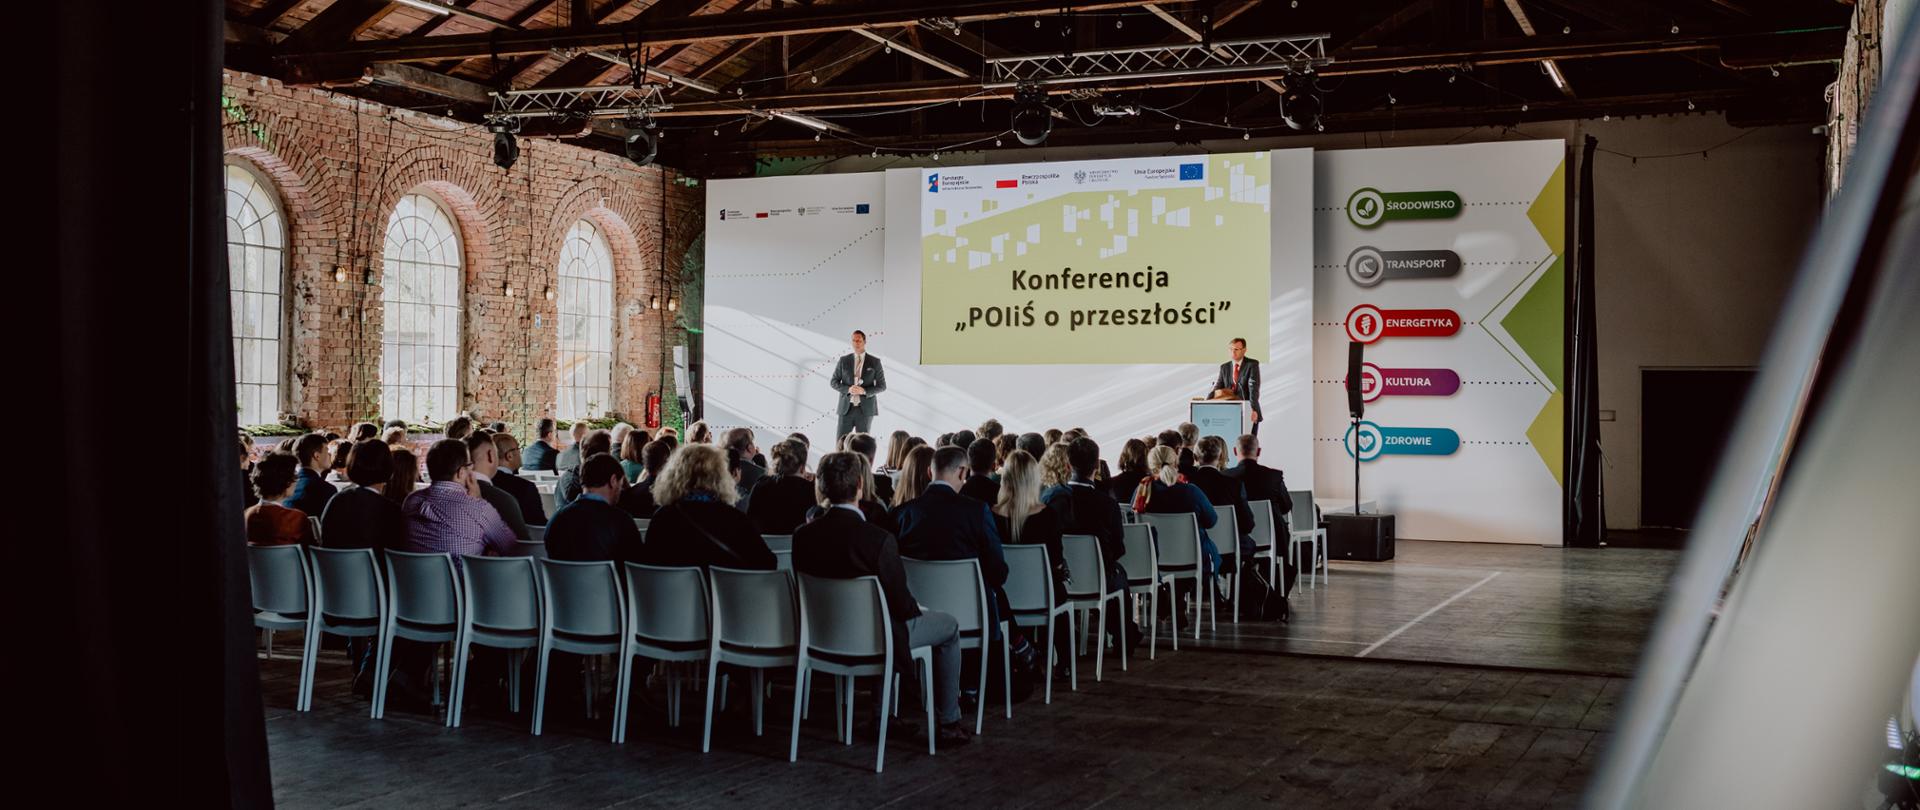 Zdjęcie przedstawia salę, na której na krzesłach siedzi grupa osób, przy mównicy stoi dyrektor Jarosław Orliński, a obok niego prowadzący. Za nimi wyświetlany jest napis "Konferencja POiŚ o przeszłości" 